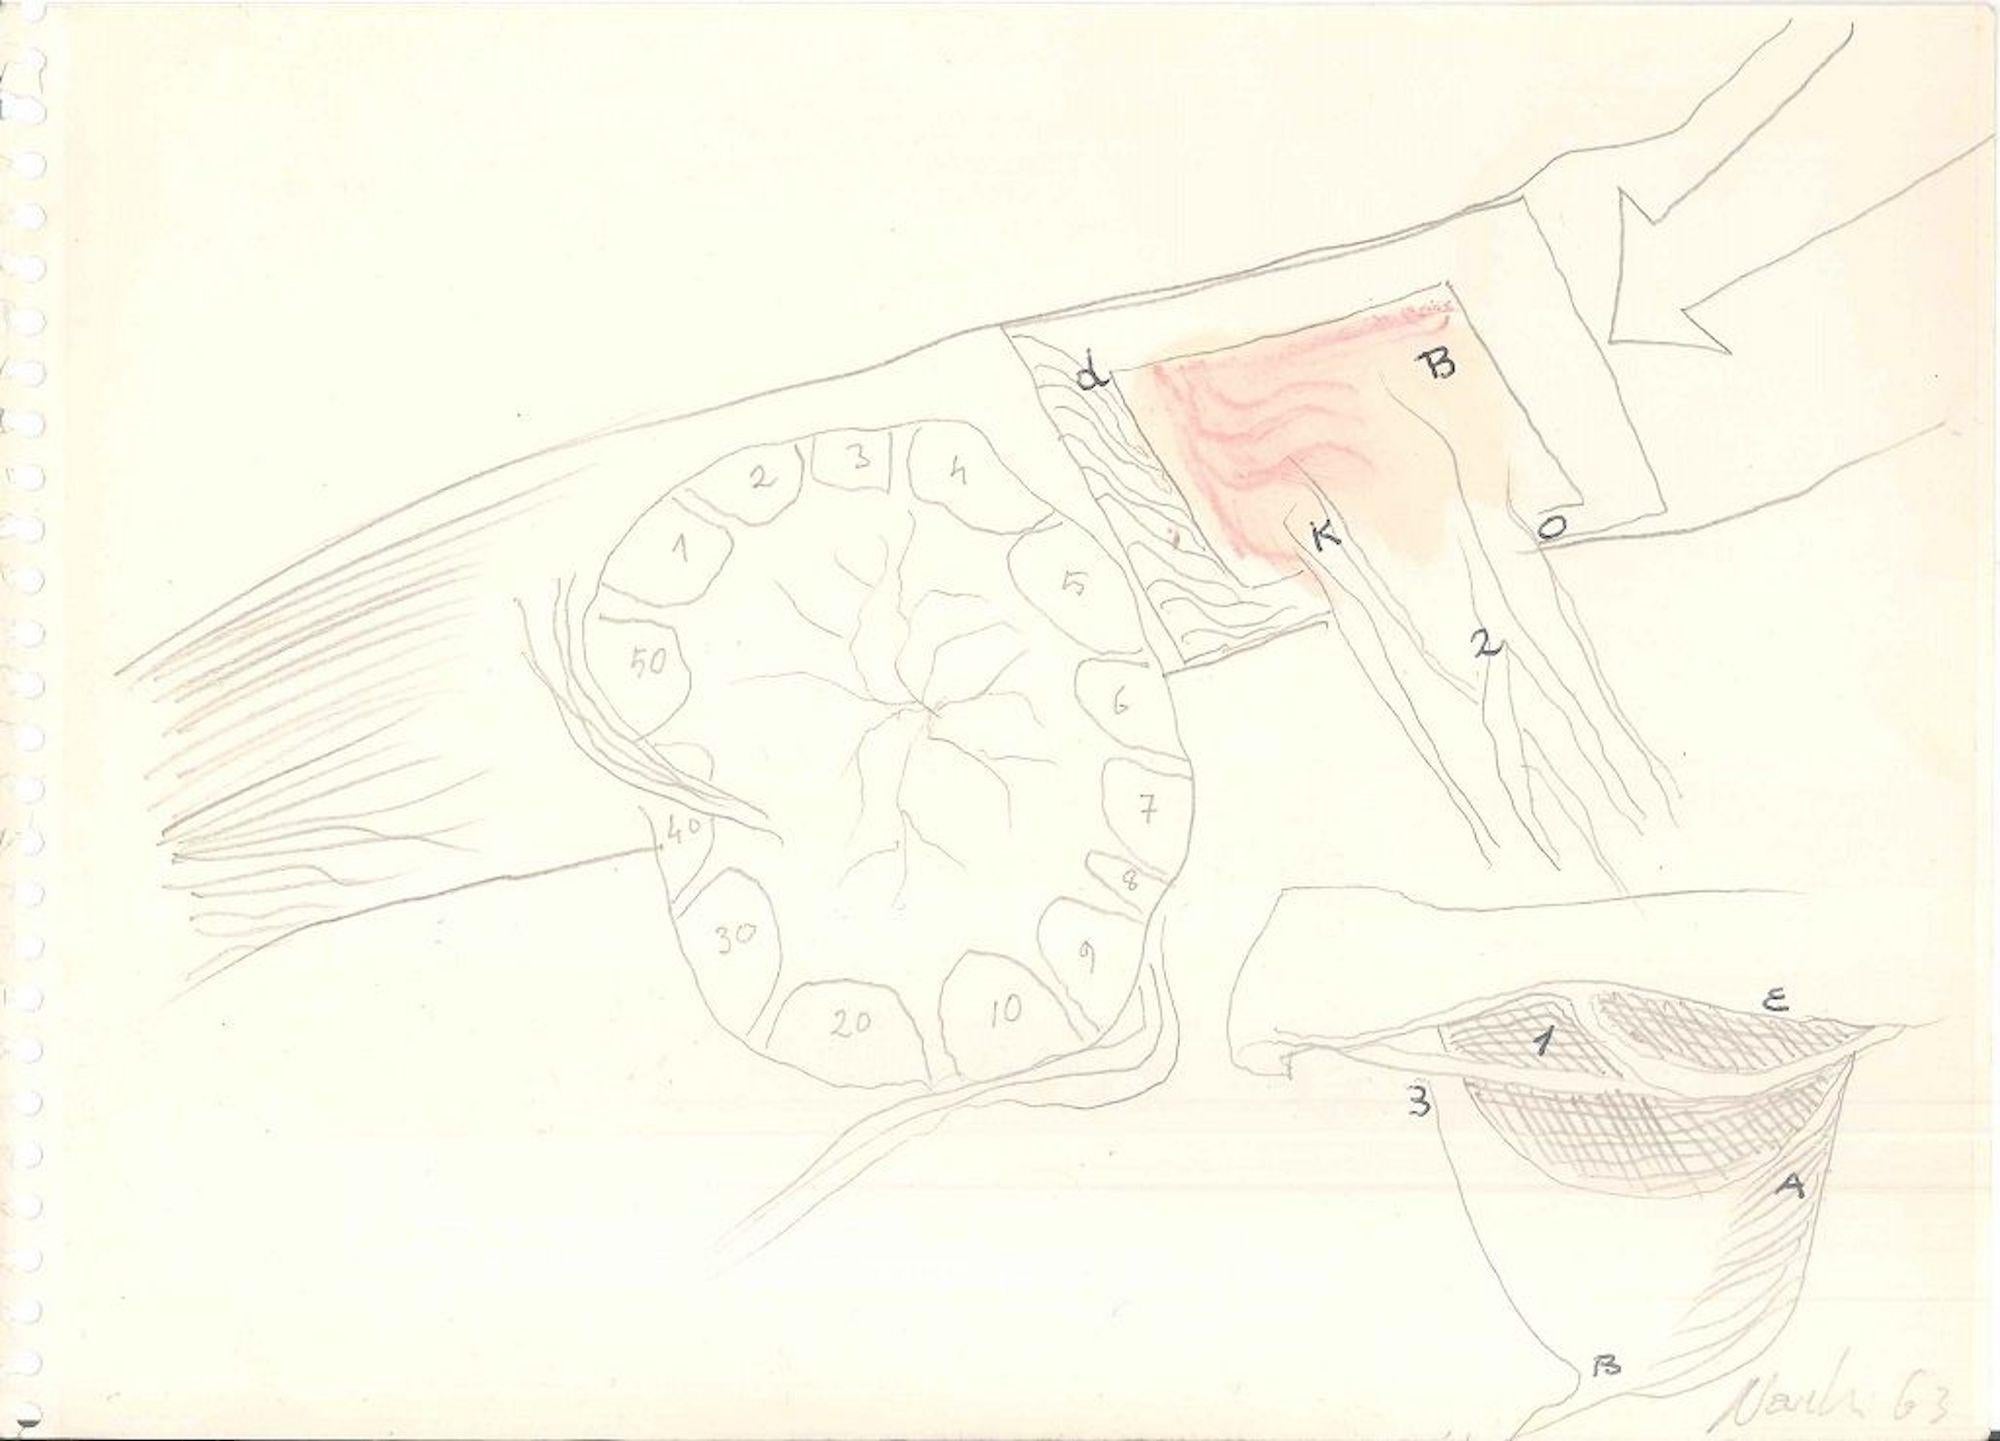 Composizione, 1963, ist eine interessante Originalzeichnung (Mischtechnik: Bleistift, Pastell, China-Tusche, Aquarell) des italienischen Künstlers Gastone Novelli.

Signiert und datiert mit Bleistift auf der Vorderseite, am unteren rechten Rand